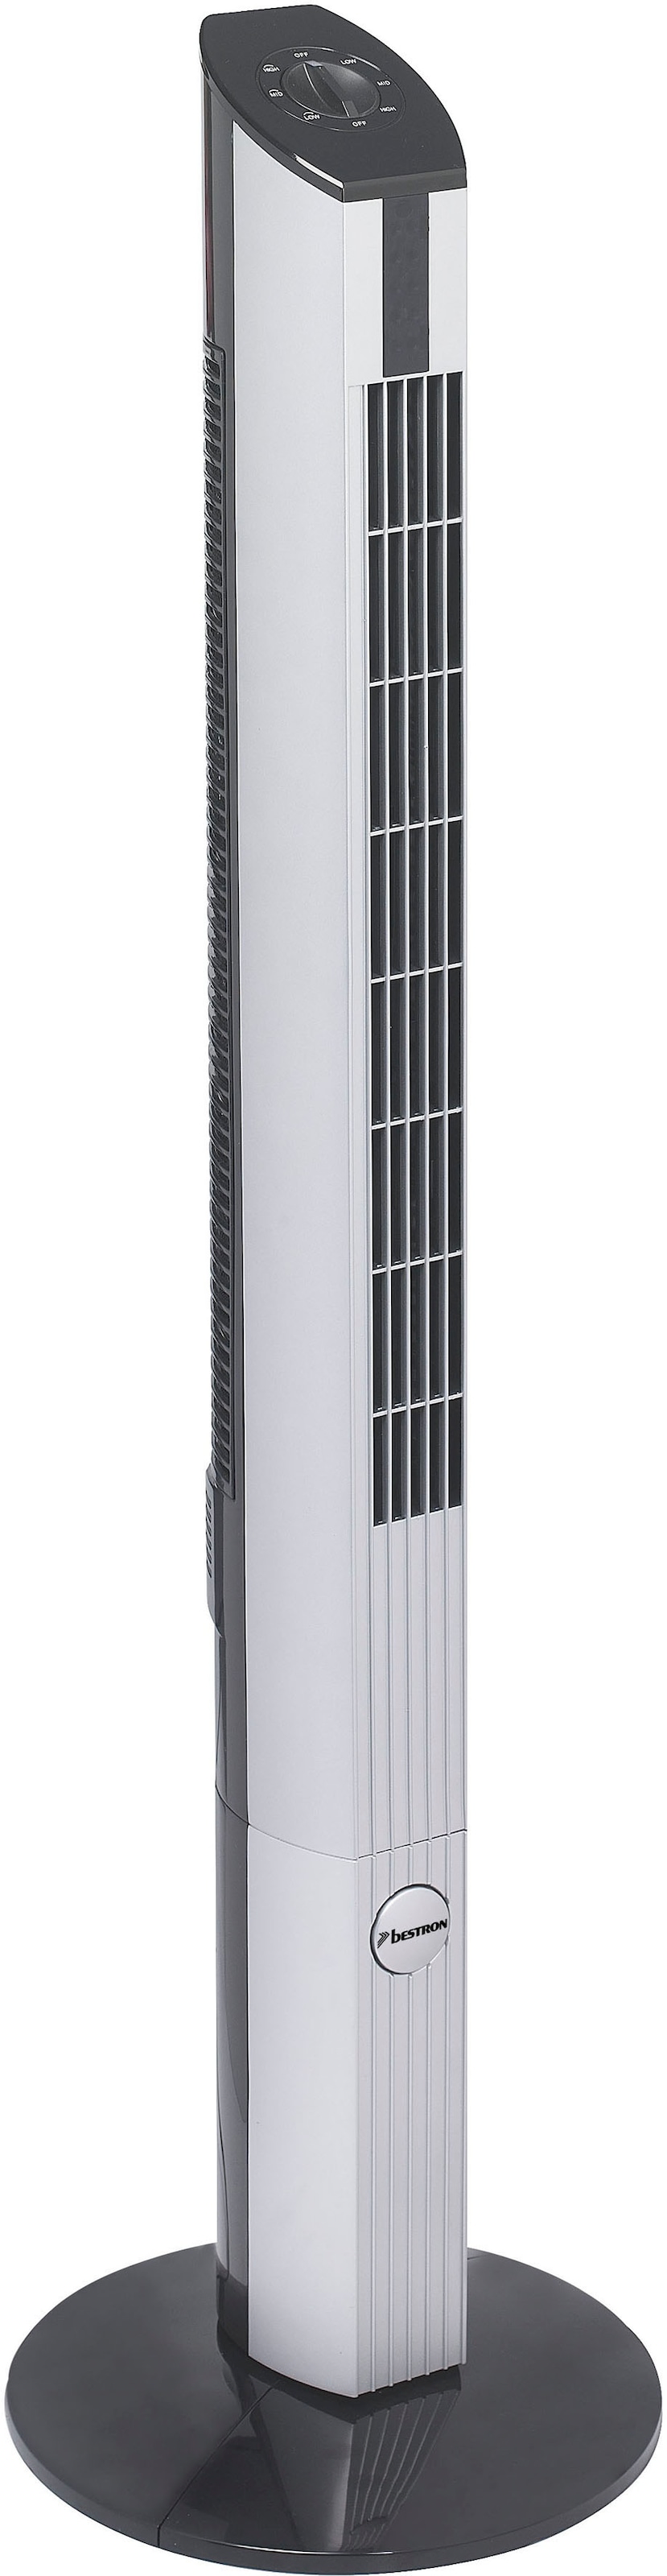 Turmventilator »DFT430«, mit Schwenkfunktion, Höhe: 107 cm, 50 W, Schwarz/Grau